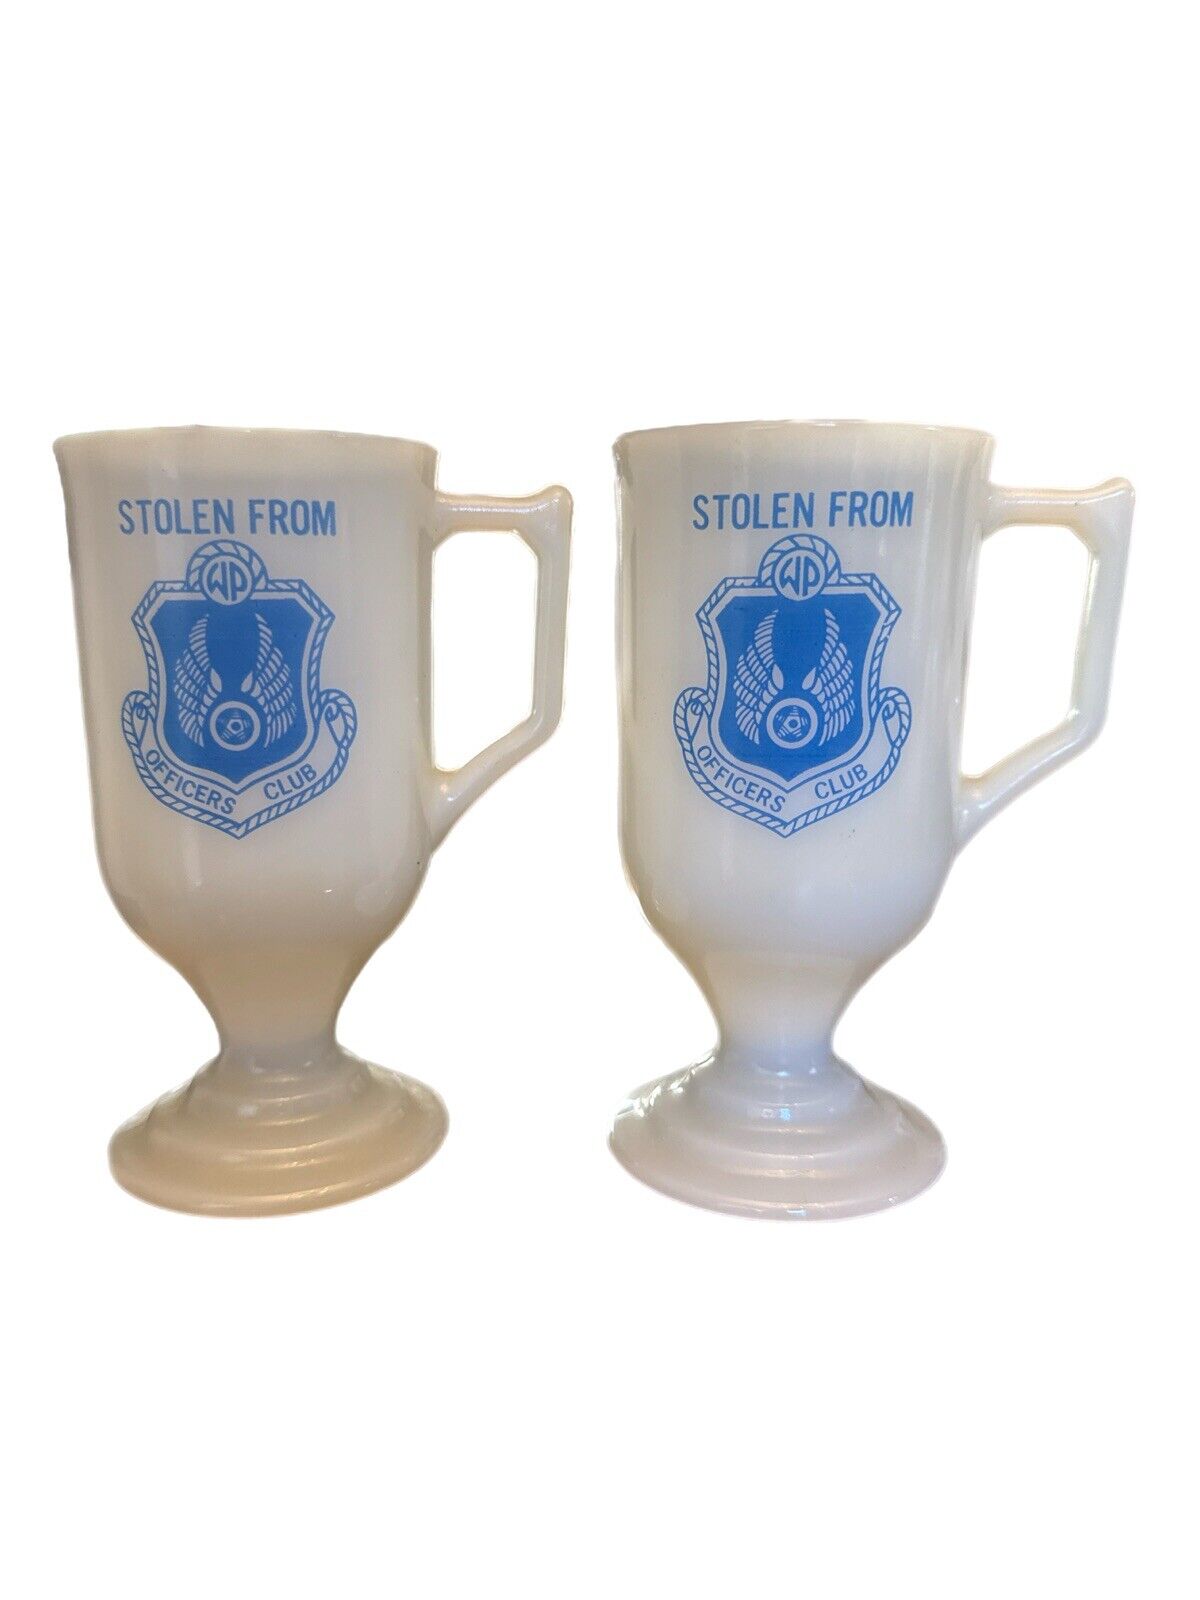 Rare Vintage Milk Glass 1960s/70s Humor WP AFB Officer’s Club Pedestal Mug Set